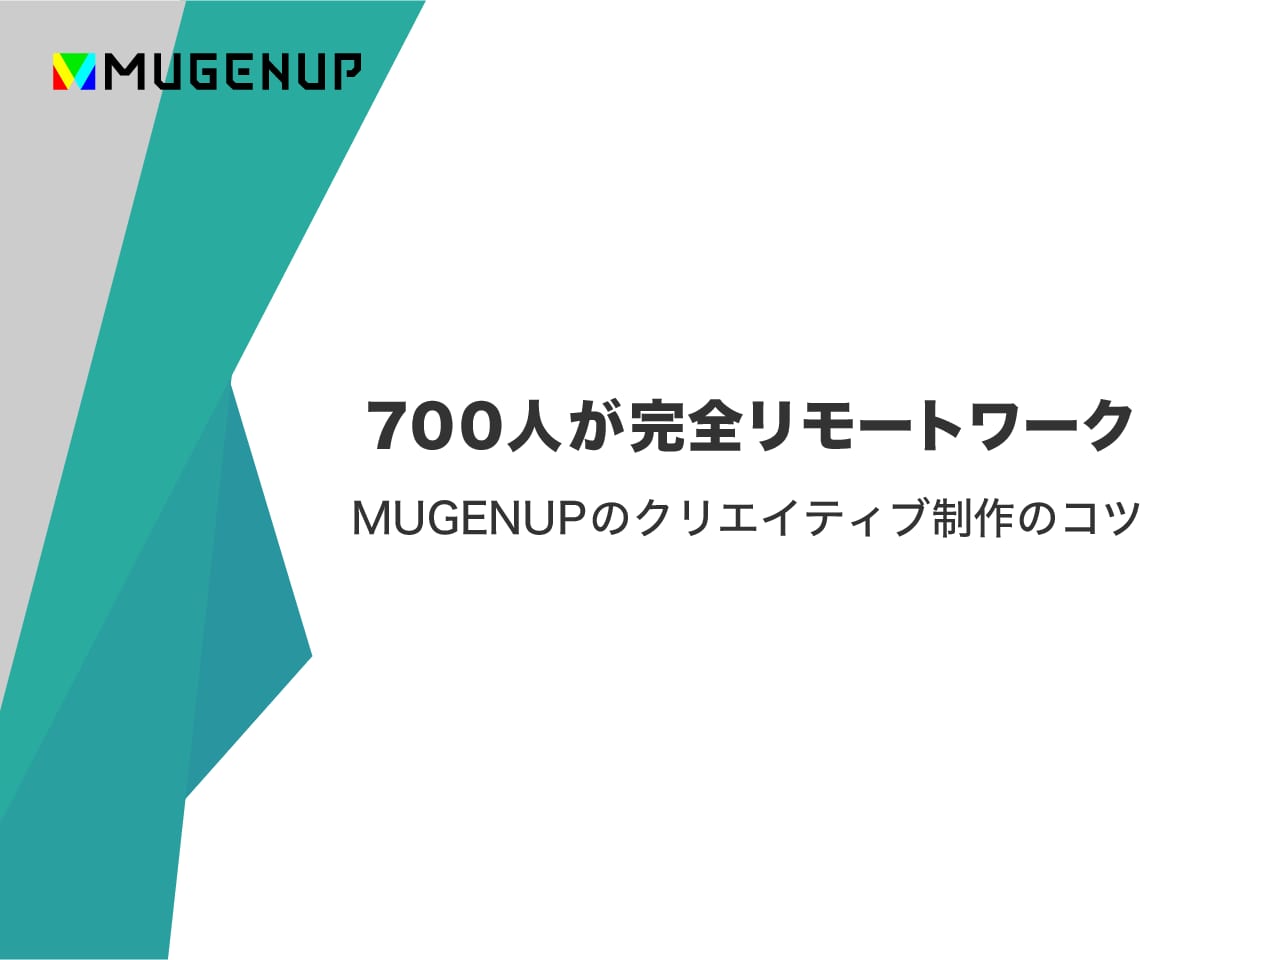 「700人 が 完全リモートワーク」MUGENUP のクリエイティブ制作のコツ